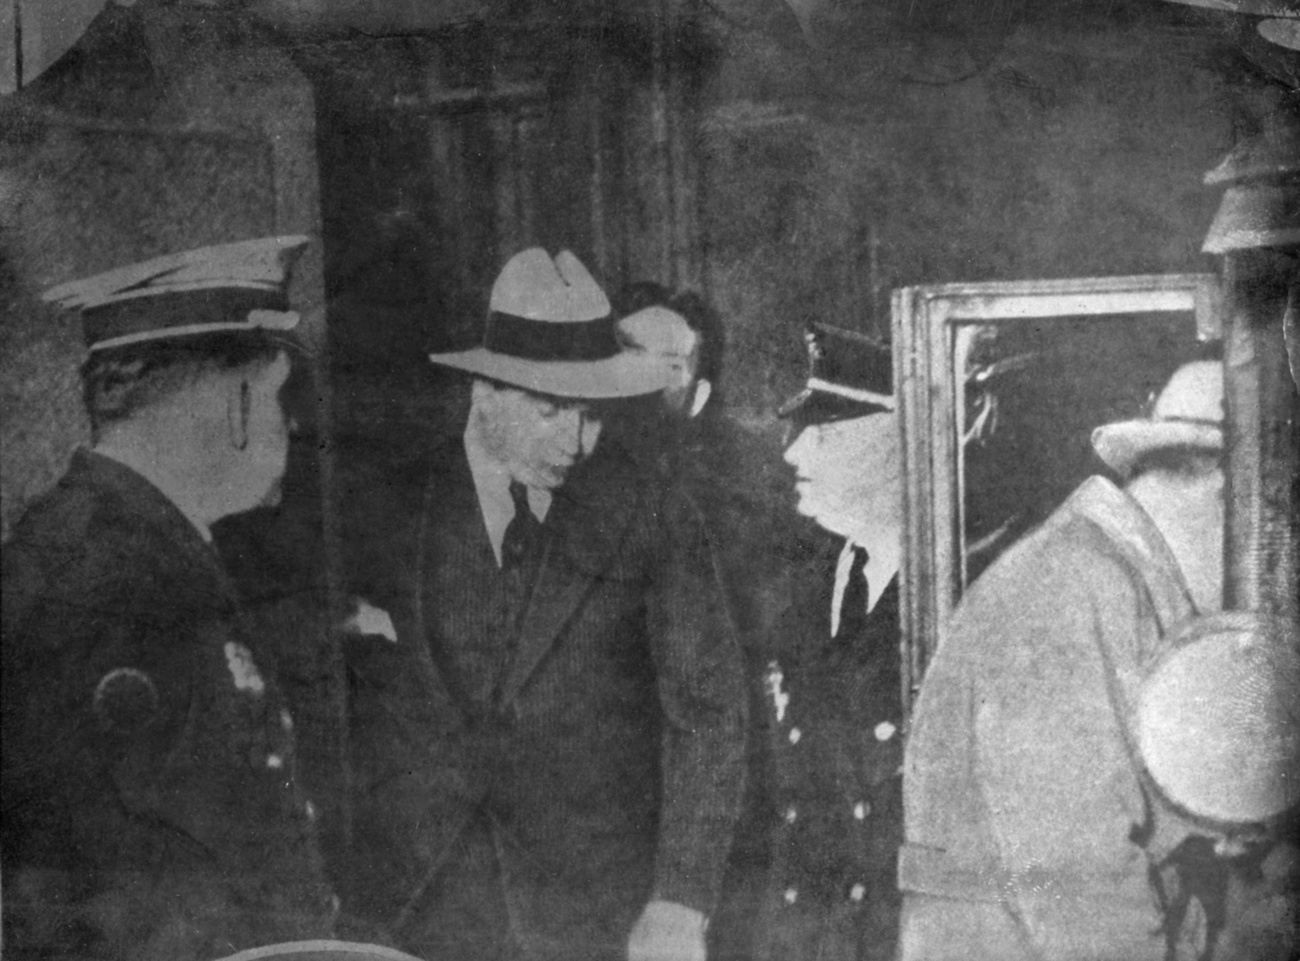 A Gengszterkorzóban többek között Capone szeszcsempészeti törekvéseinek kibontakozását követhetik figyelemmel a nézők.